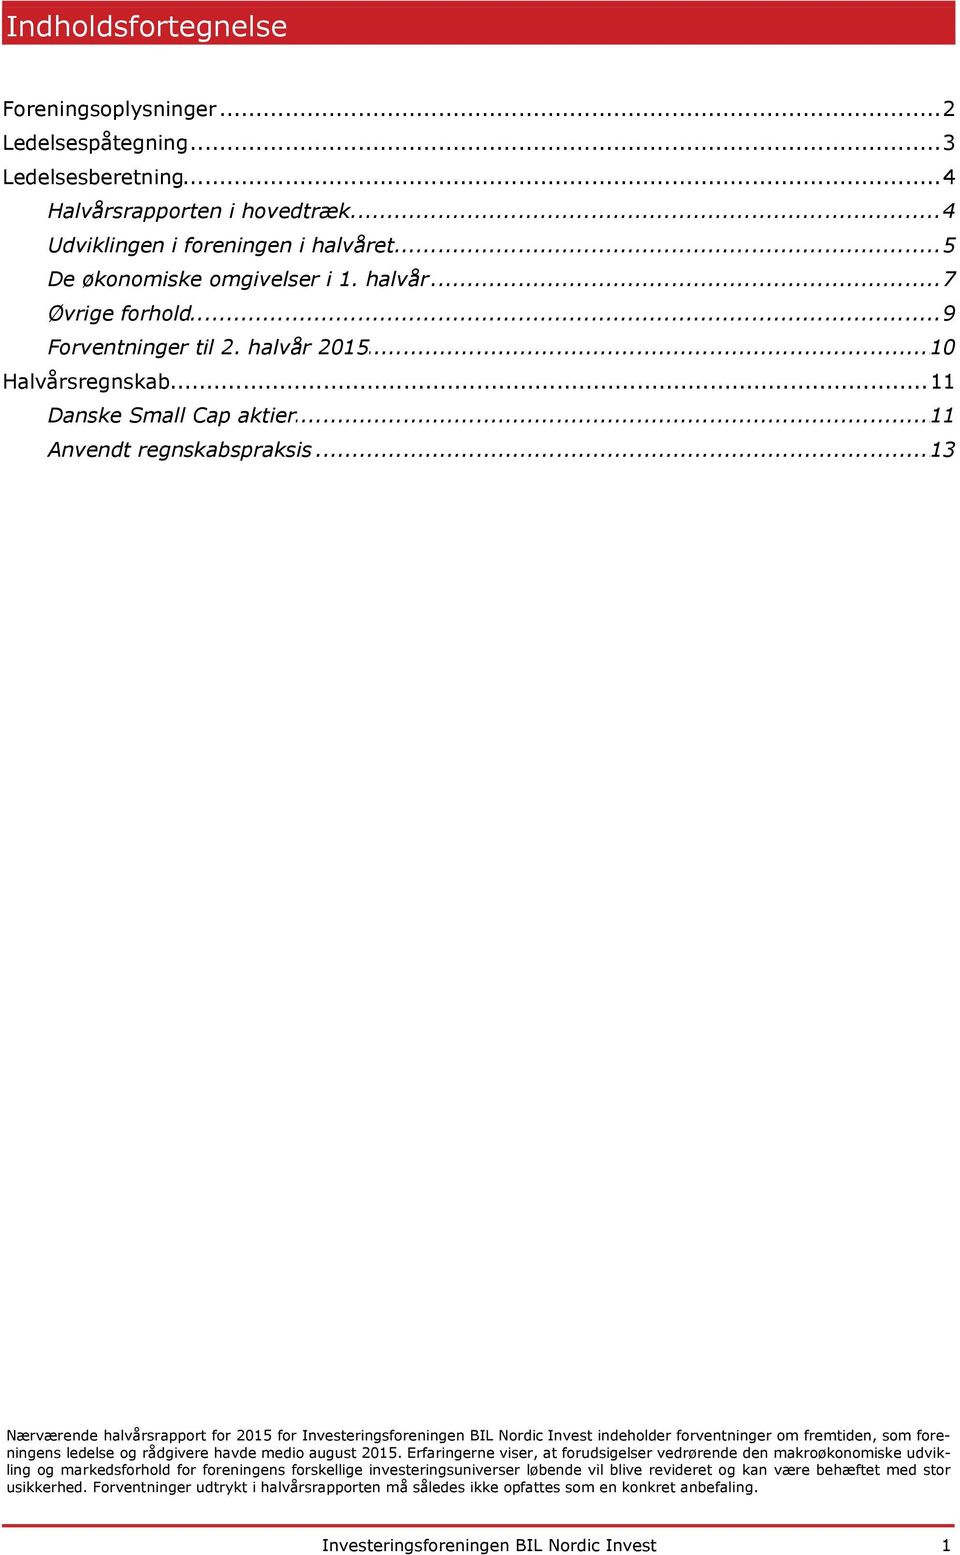 .. Anvendt regnskabspraksis 13 Nærværende halvårsrapport for 2015 for Investeringsforeningen BIL Nordic Invest indeholder forventninger om fremtiden, som foreningens ledelse og rådgivere havde medio